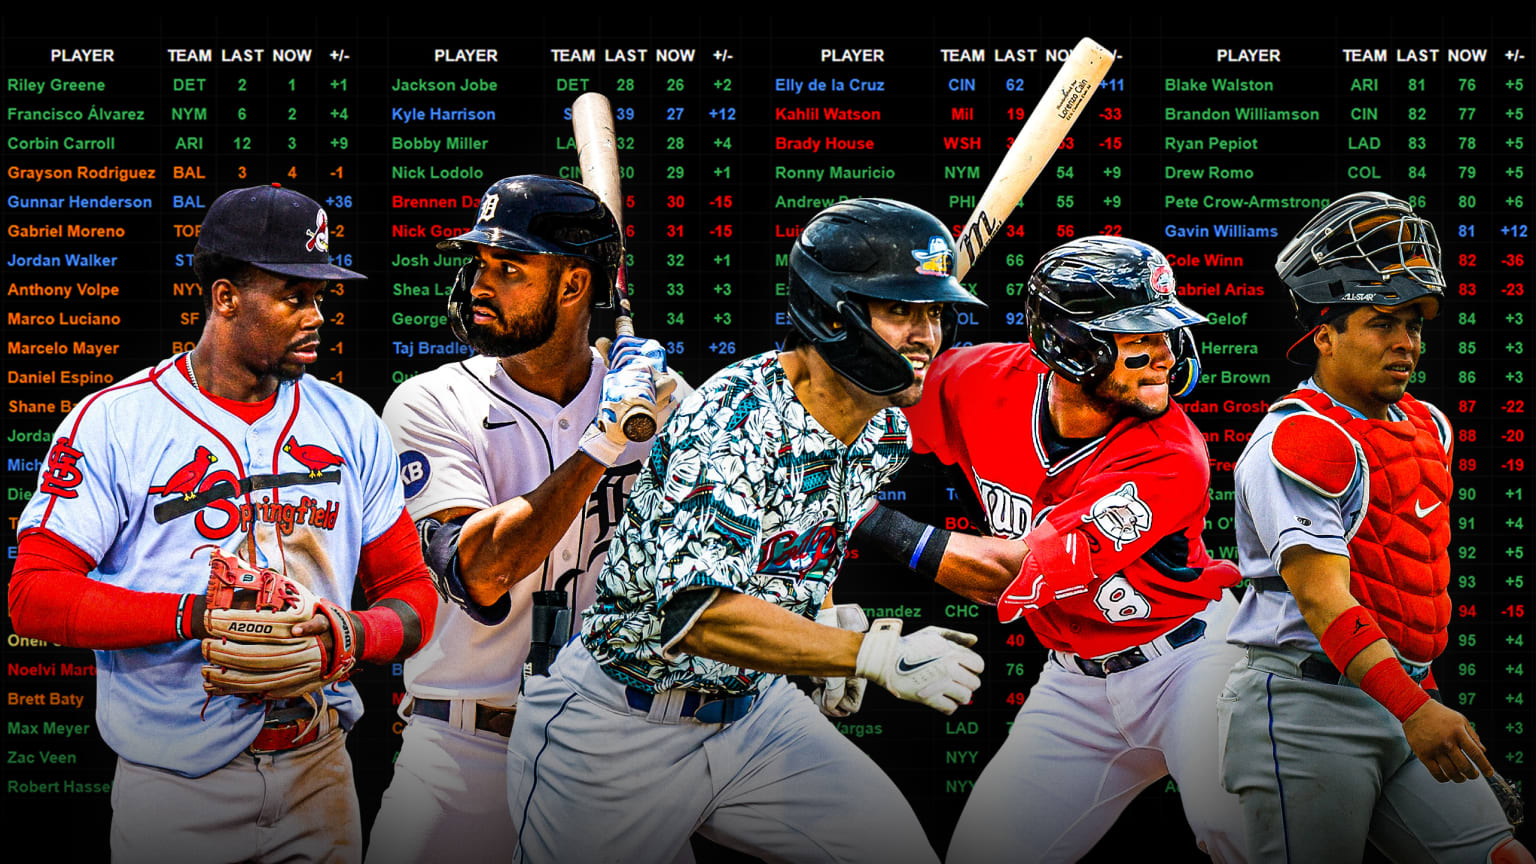 La nueva lista de los 100 Mejores prospectos de MLB Pipeline